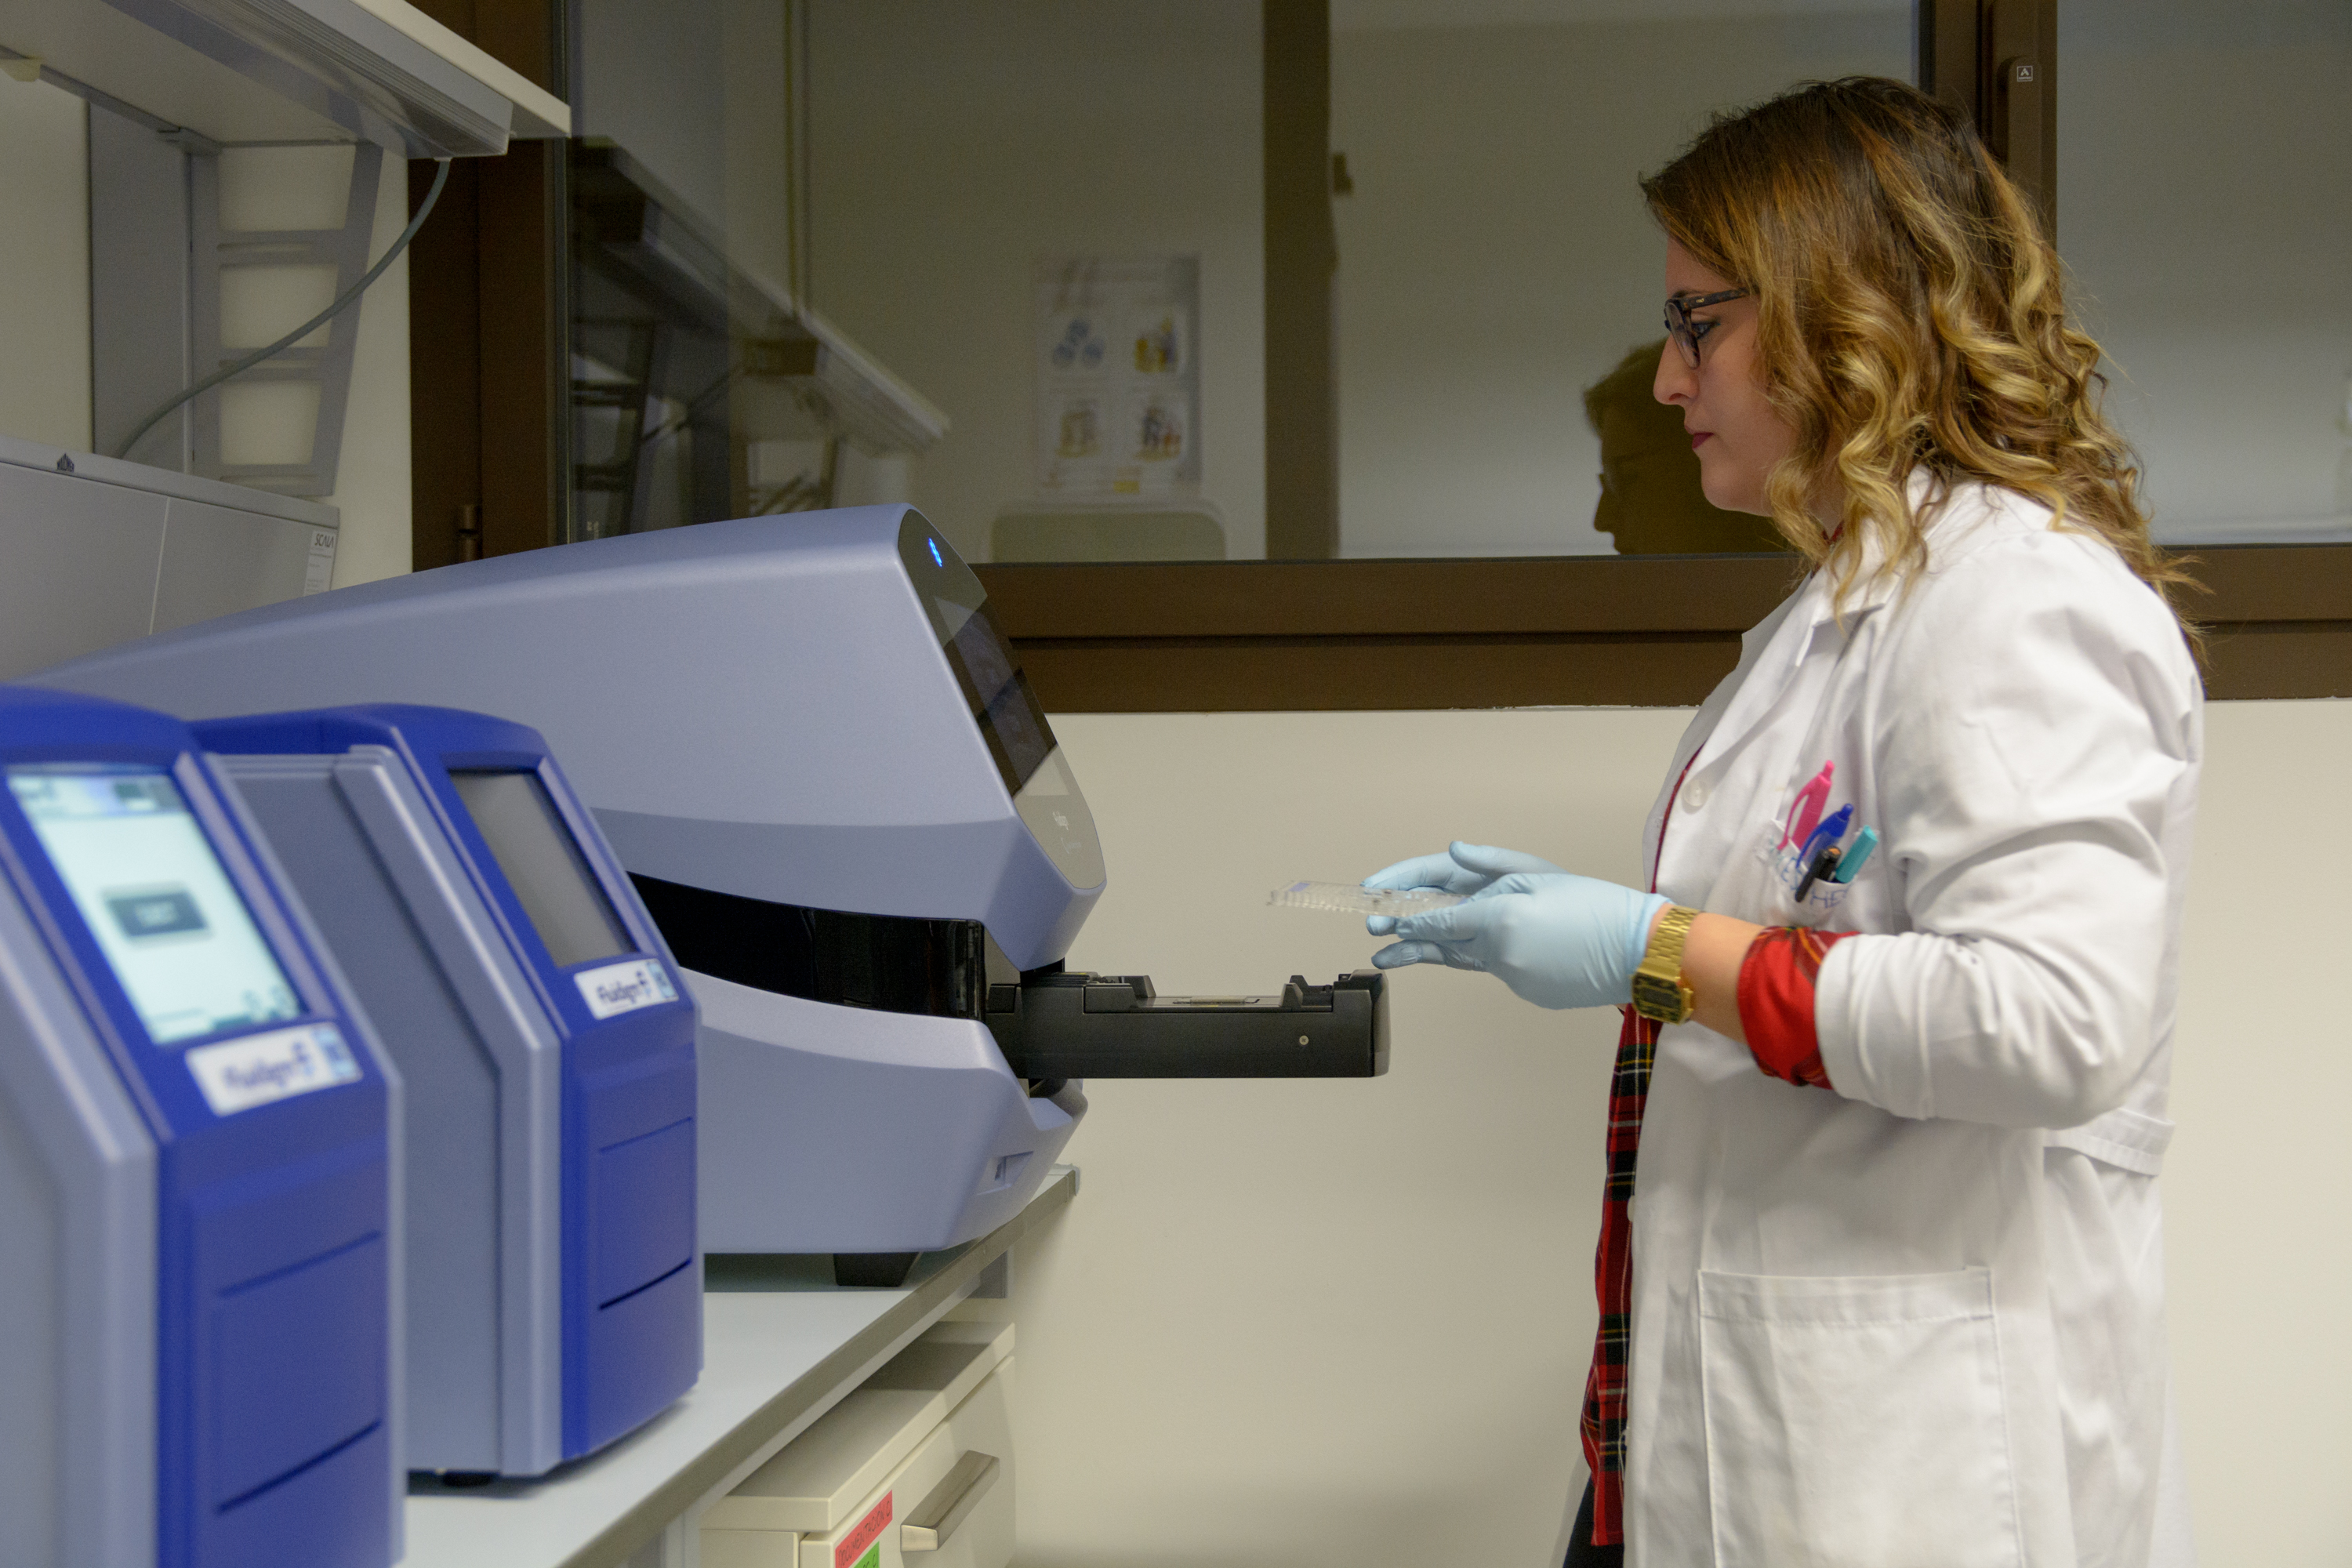 La Universidad de Salamanca adquiere un sistema de alta capacidad para el análisis de la variabilidad genética, disponible para la comunidad científica